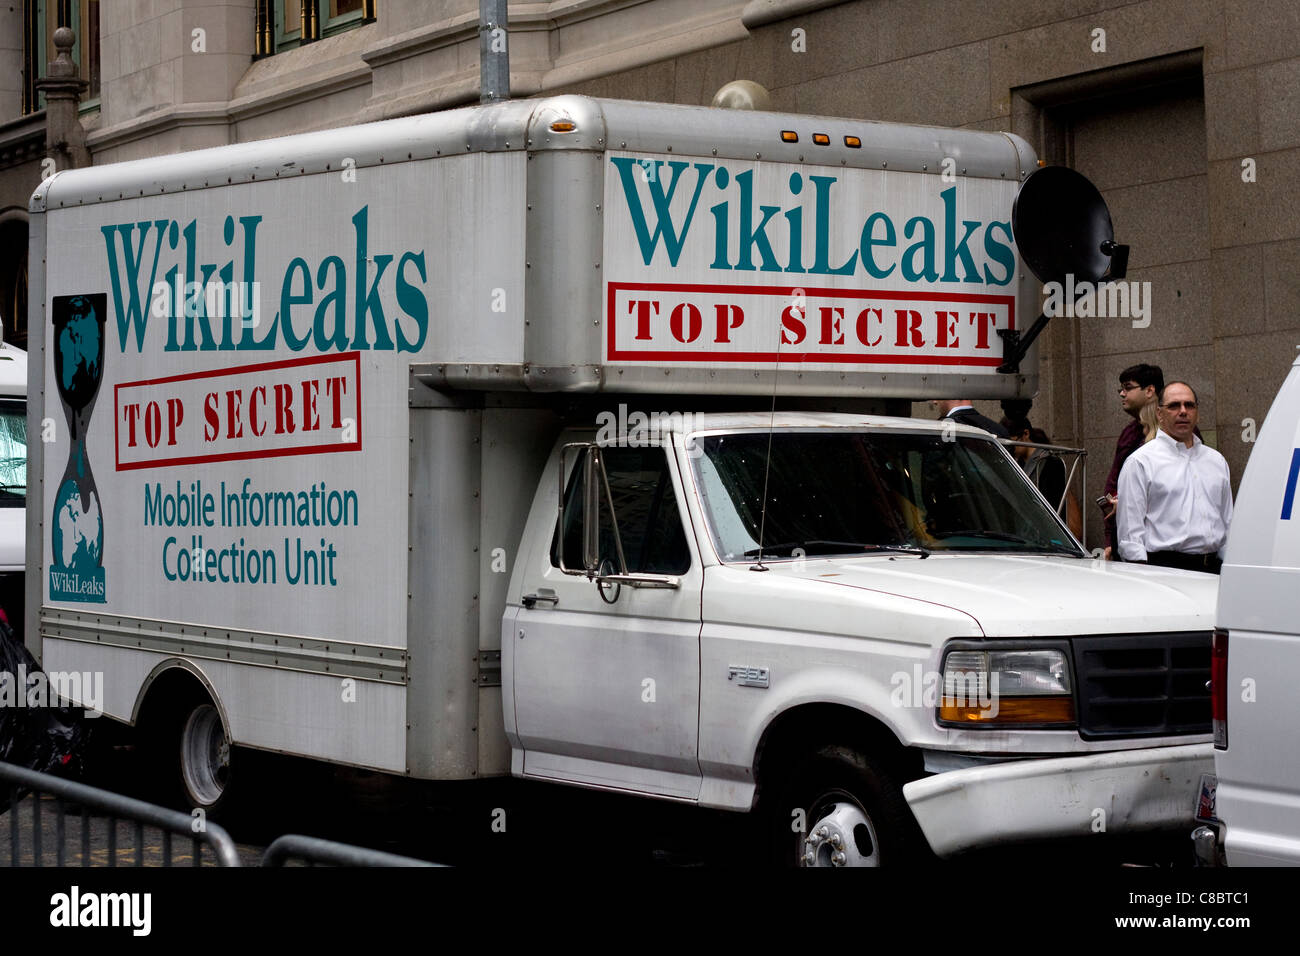 WikiLeaks TOP SECRET Mobile Sammlung Informationseinheit auf der Seite einen Ford f-350 Koffer LKW mit Satellitenschüssel befestigt Stockfoto